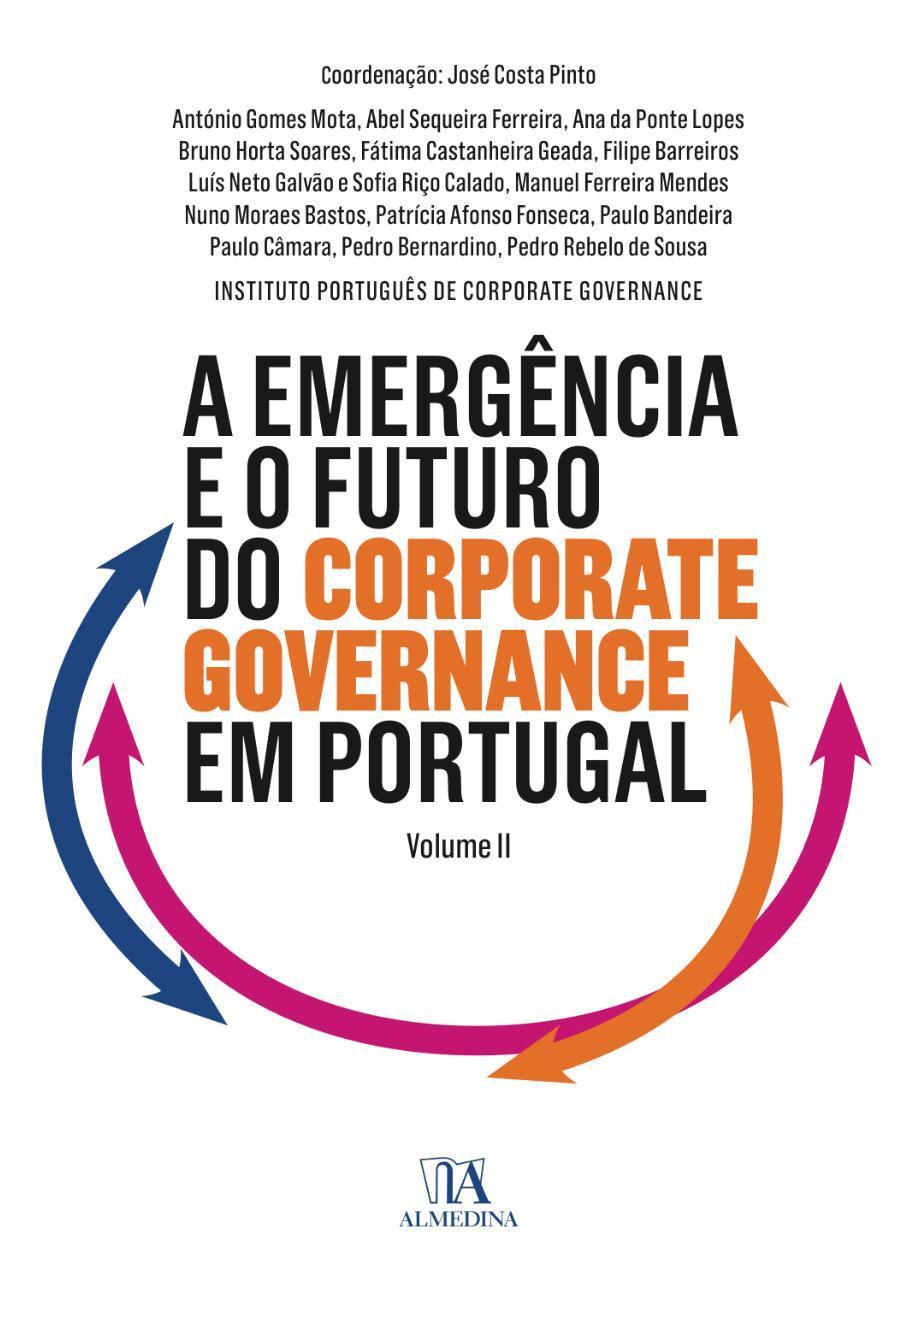 A Emergência e o Futuro do Corporate Governance em Portugal-Vol II